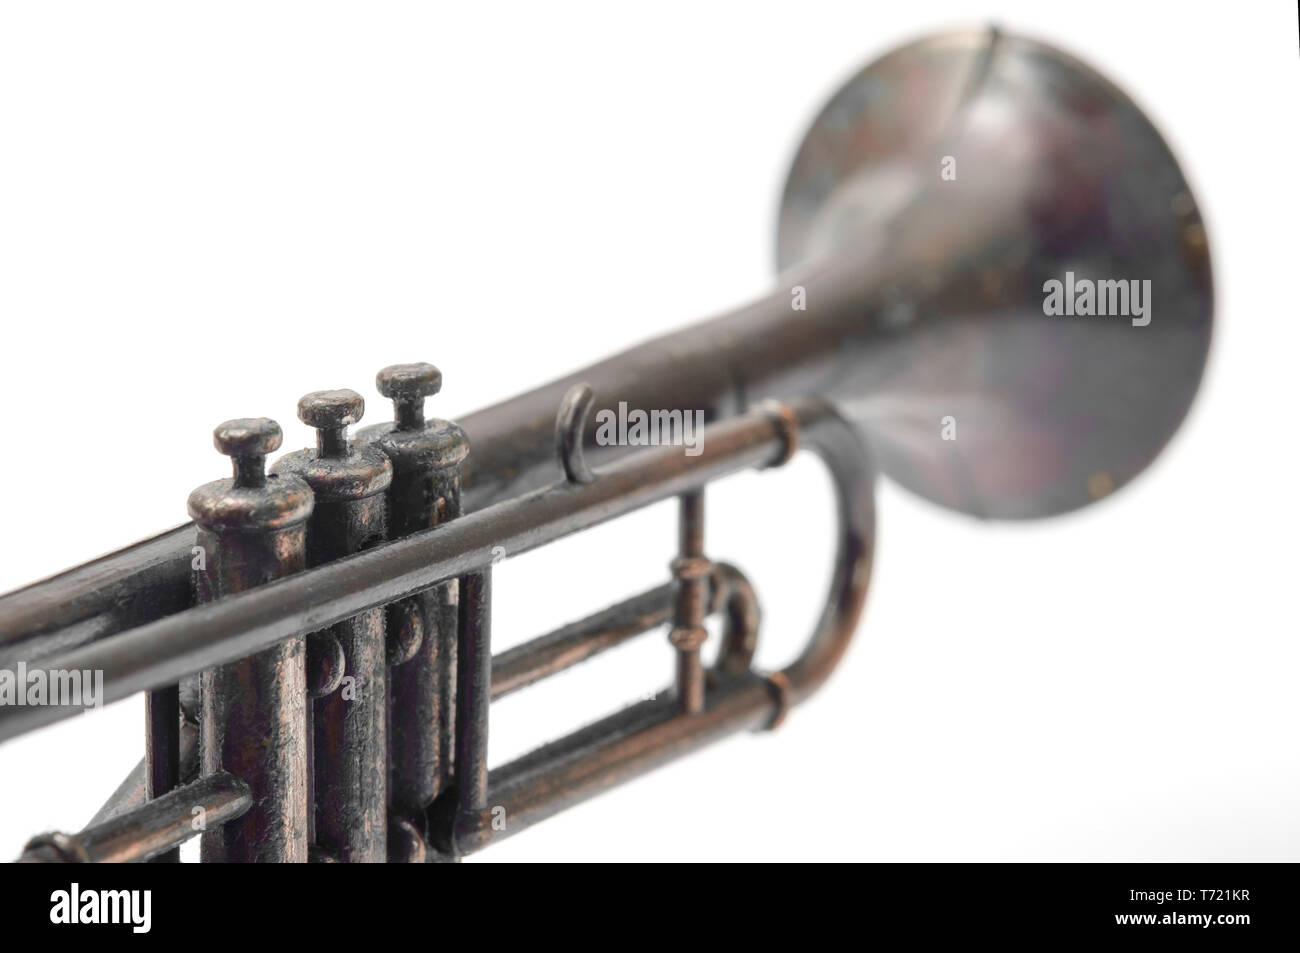 Vintage toy, closeup trumpet on white background. Stock Photo